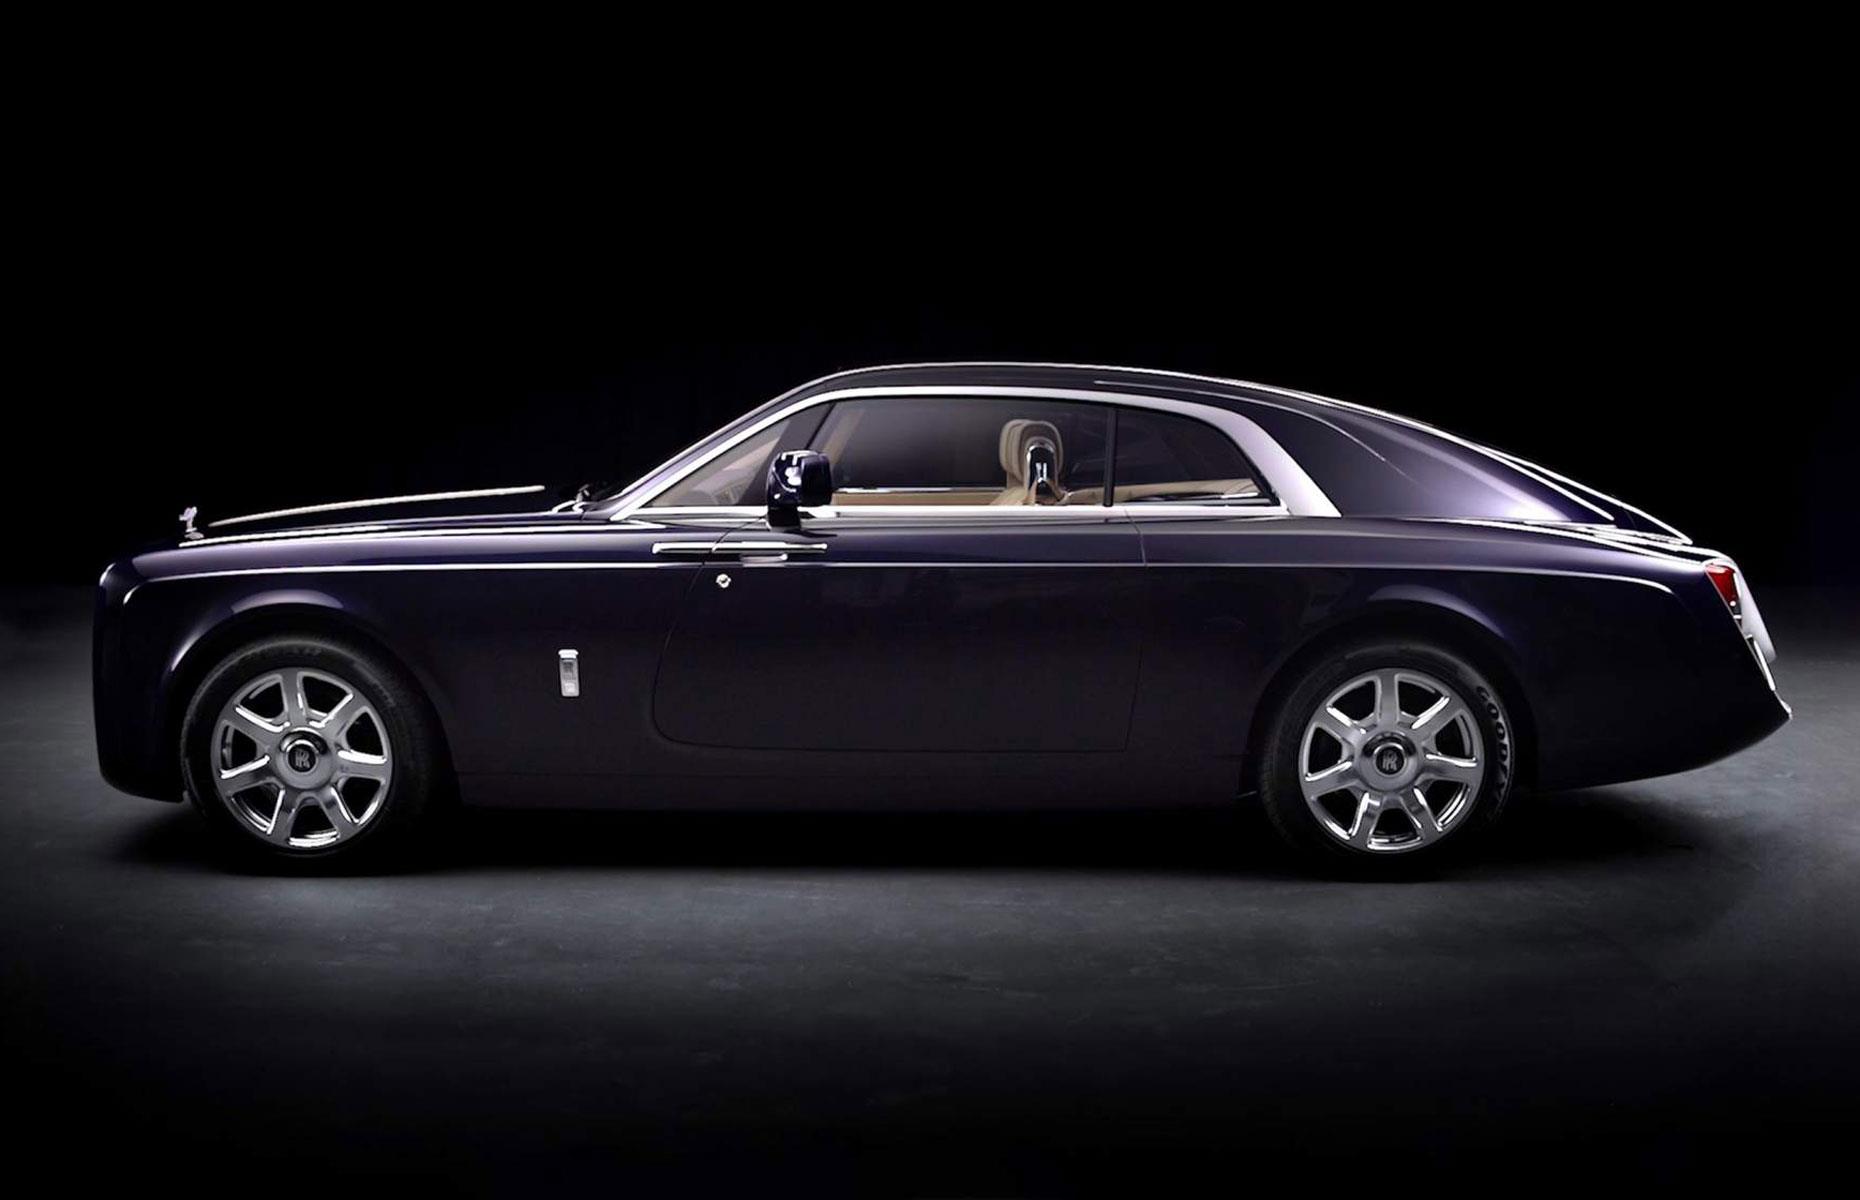 Der Rolls-Royce Sweptail, ein Einzelstück, wurde 2017 mit großem Tamtam enthüllt. Ein unbekannter Milliardär soll für den Zweisitzer 13 Millionen US-Dollar (11,6 Mio. Euro) bezahlt haben. Damit war der Sweptail zu dem Zeitpunkt der teuerste Neuwagen der Welt. Allerdings hielt der Rekord nicht lange an.